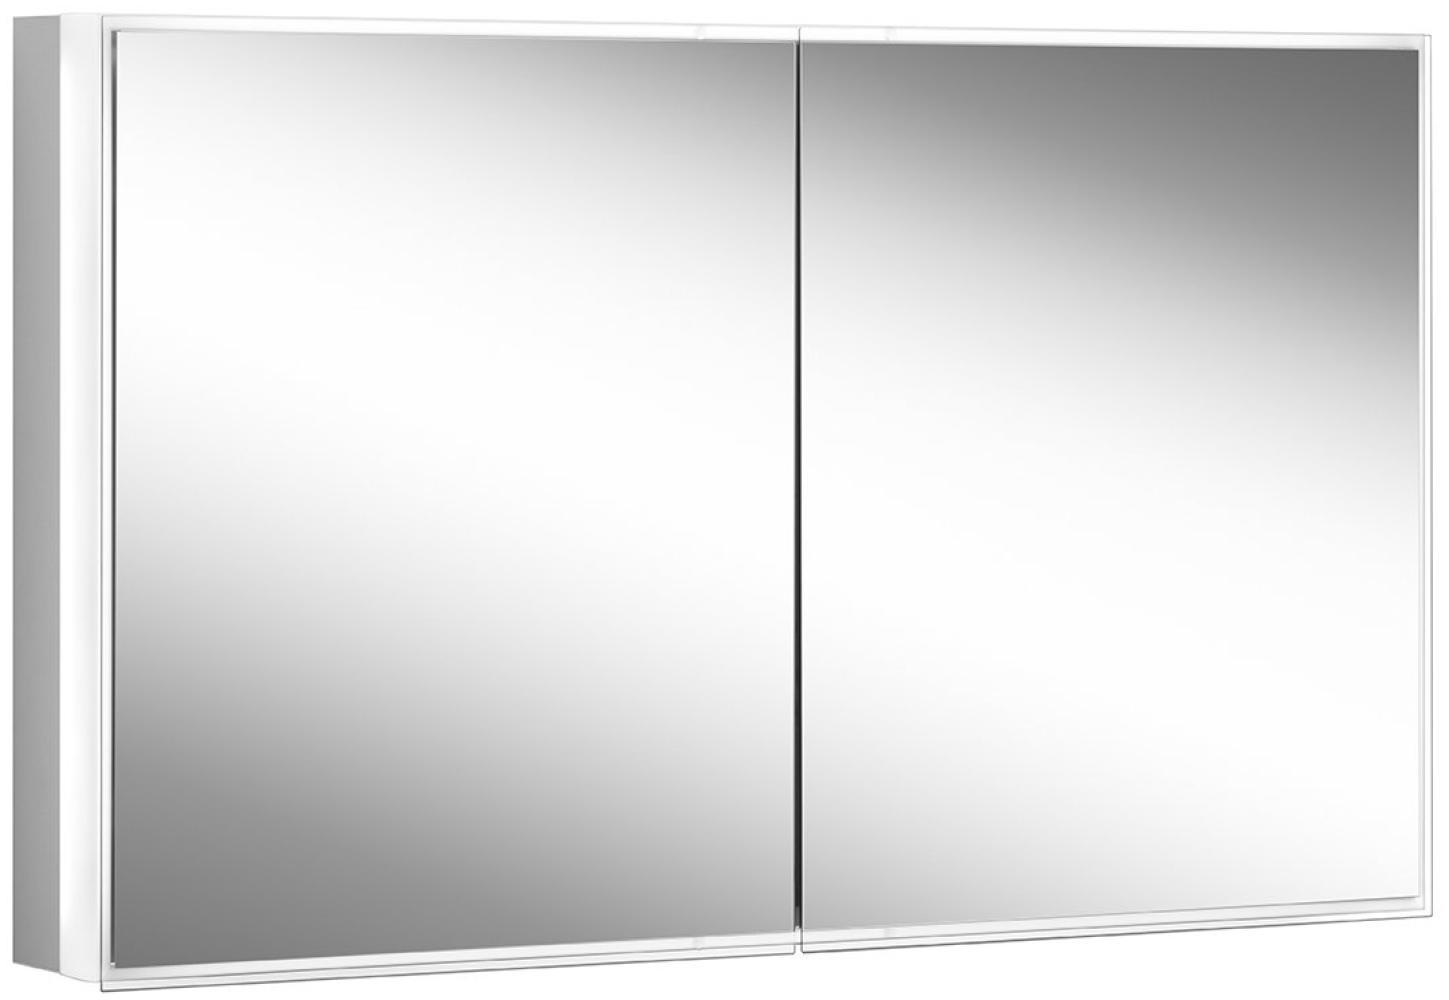 Schneider PREMIUM Line Superior LED Lichtspiegelschrank, 2 Doppelspiegeltüren, 1225x73,6x16,7cm, 181. 120, Ausführung: EU-Norm/Korpus silber eloxiert - 181. 120. 02. 50 Bild 1